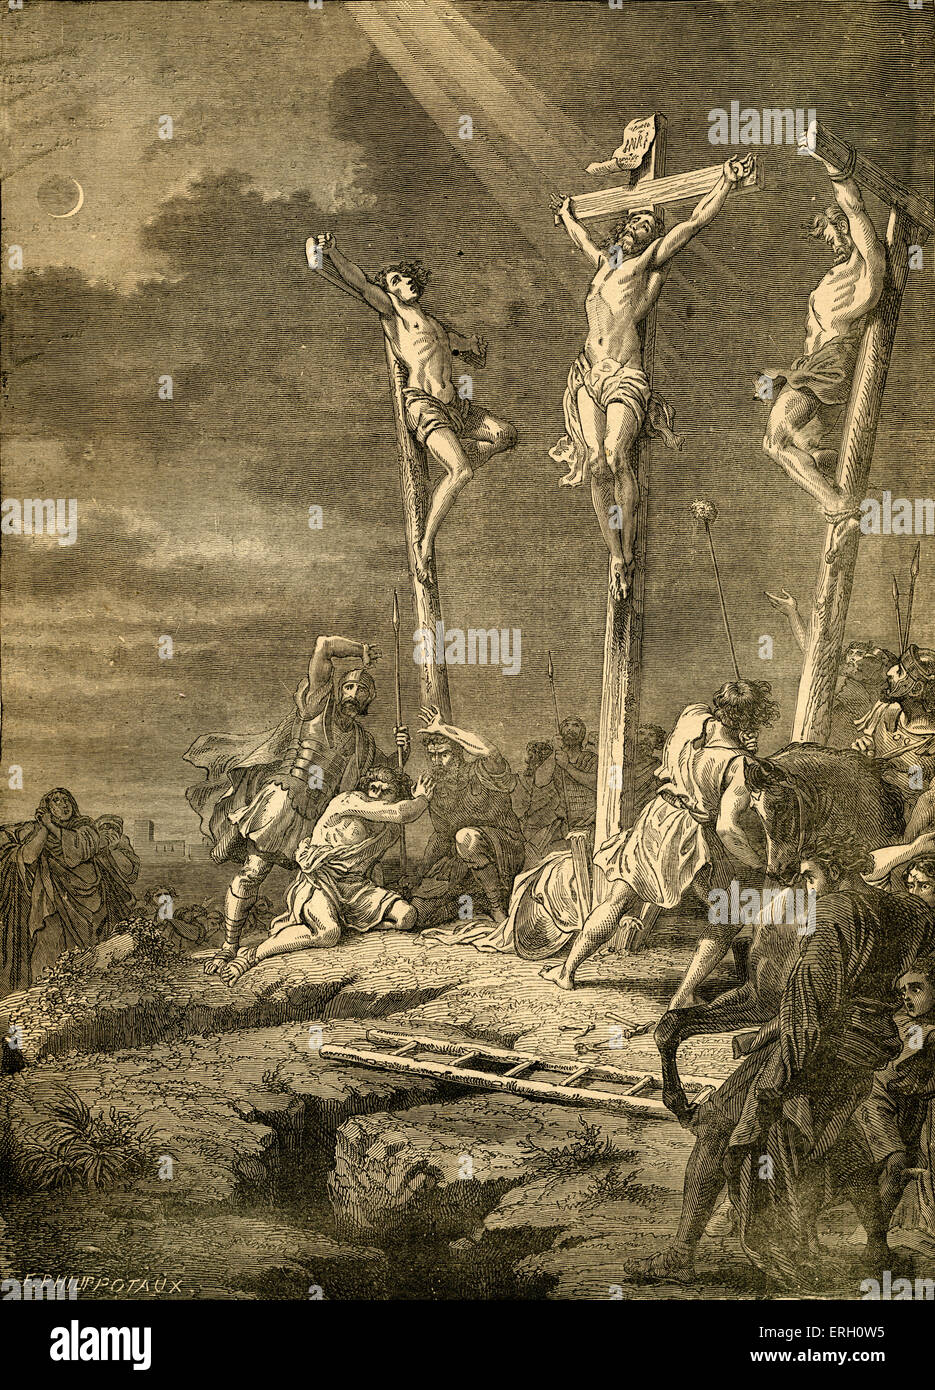 La crocifissione di Gesù Cristo, Matteo XXVII. Da Cassell illustrata della Bibbia in famiglia. Incisione di F. Philippotaux. Foto Stock